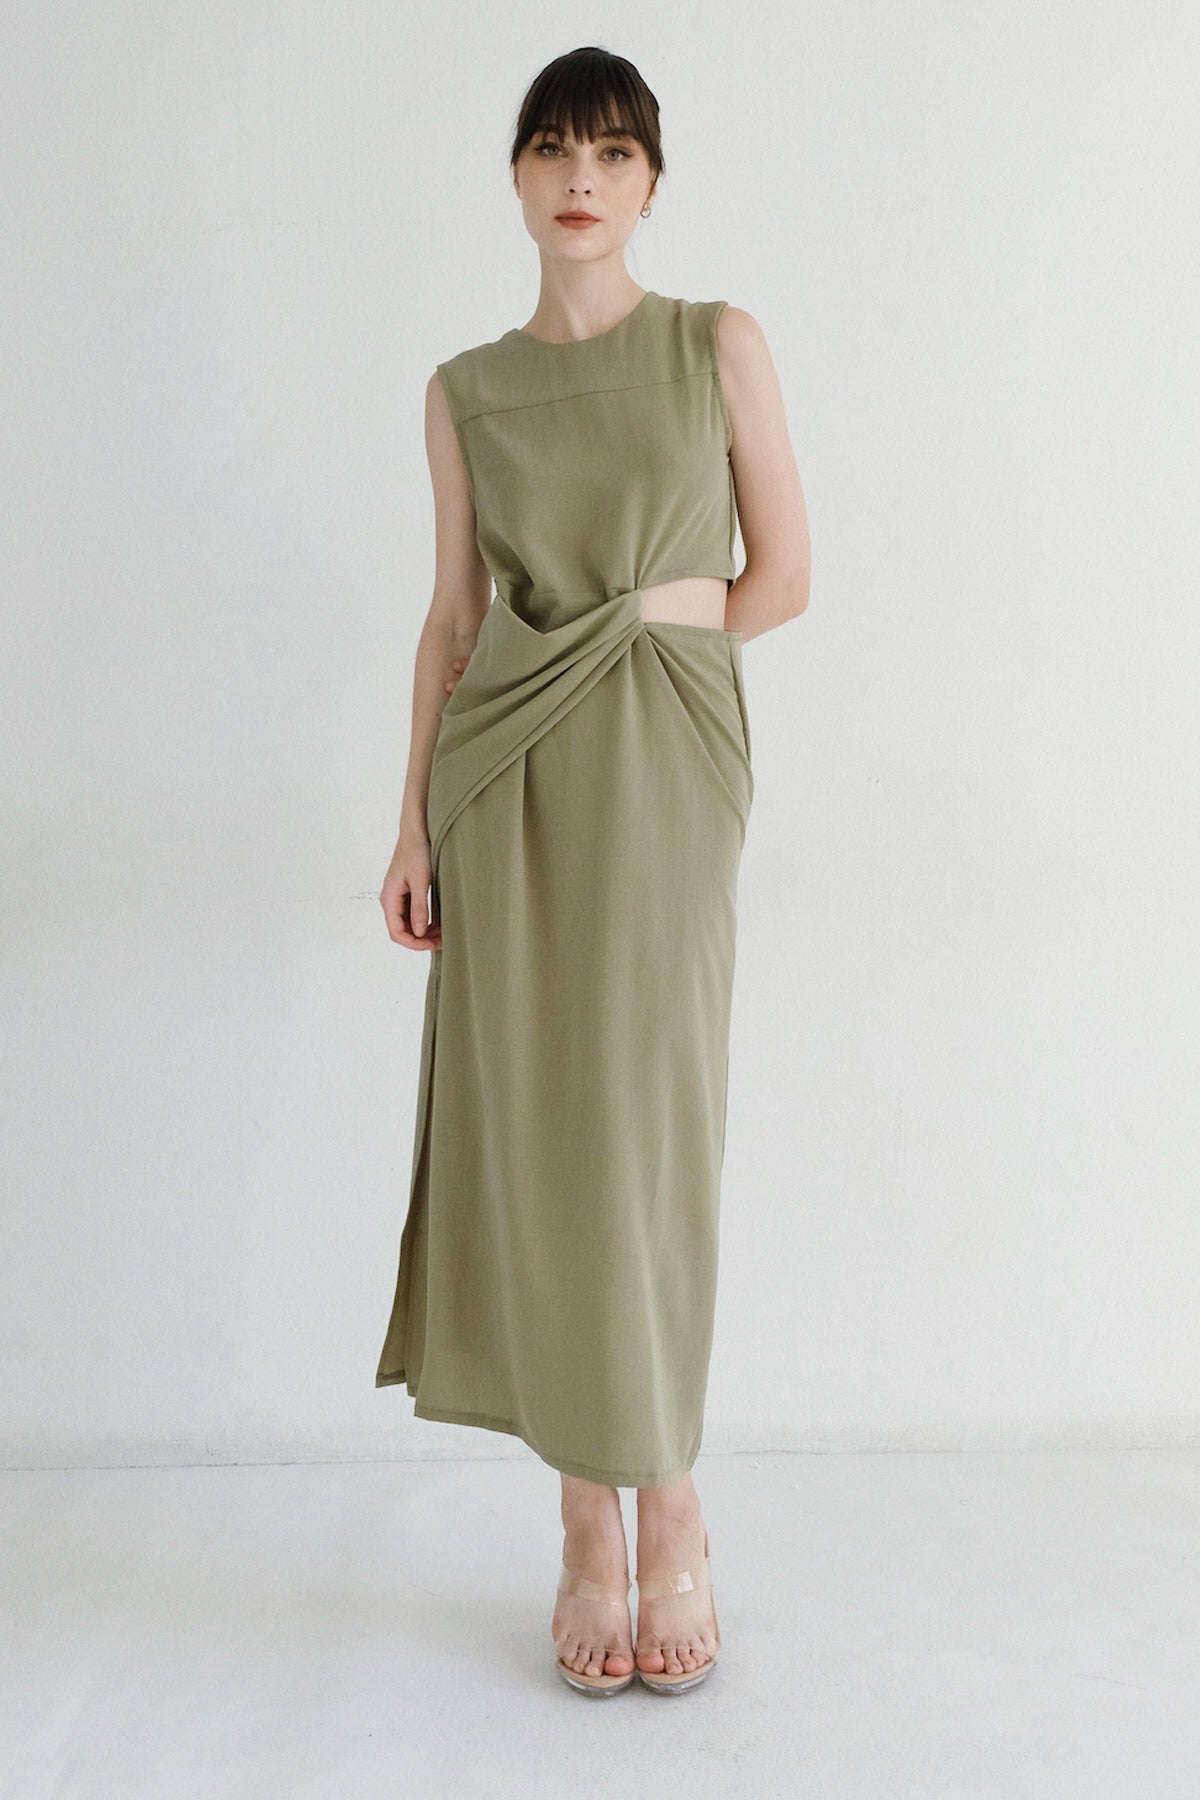 Ava Dress In Moss (Left 2S,1M)